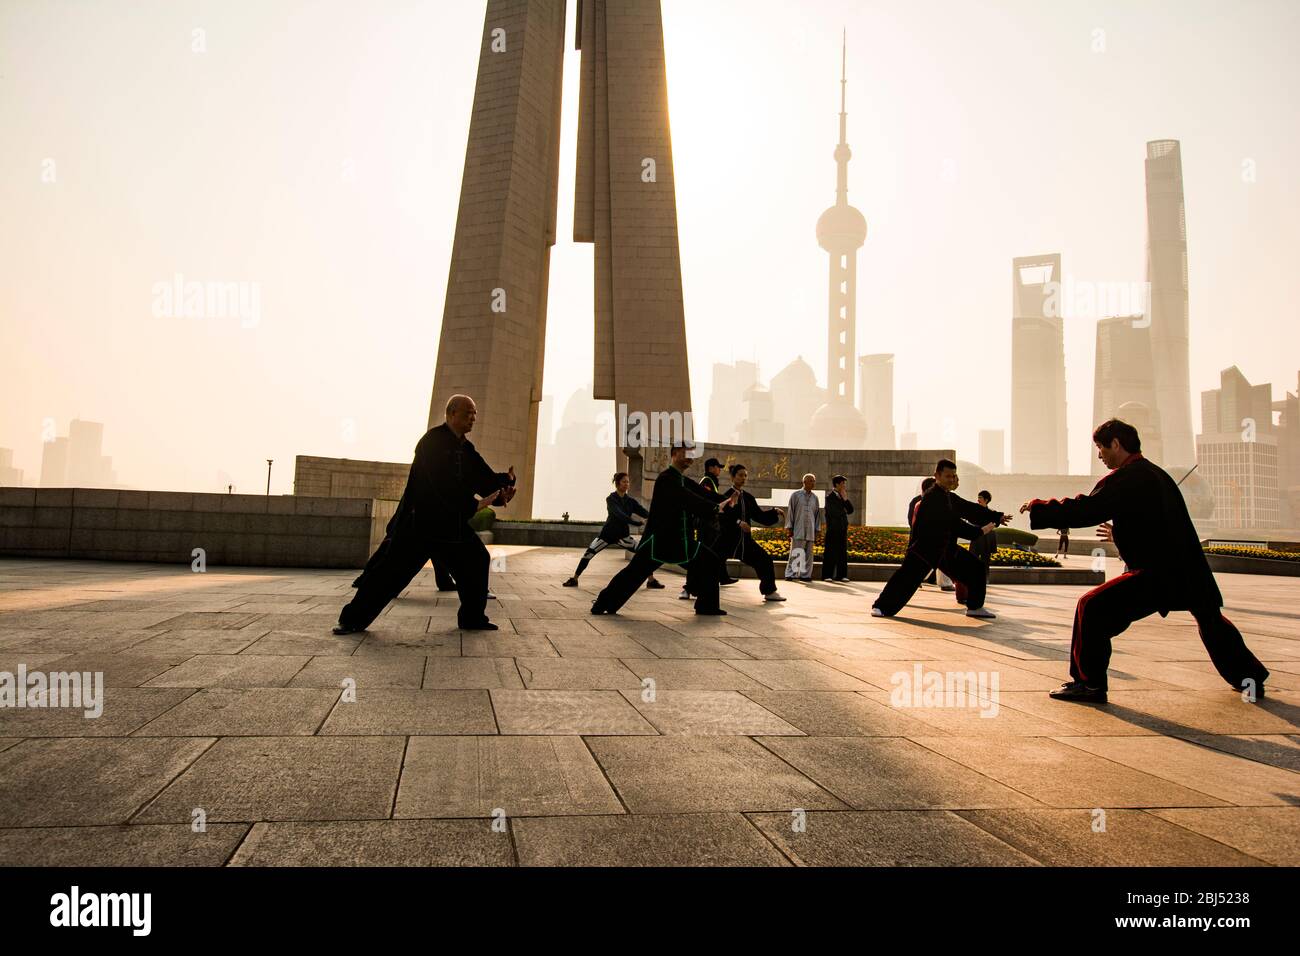 Popolo cinese vestito di nero facendo tai chi mattina sullo sfondo di grattacieli moderni. Foto Stock